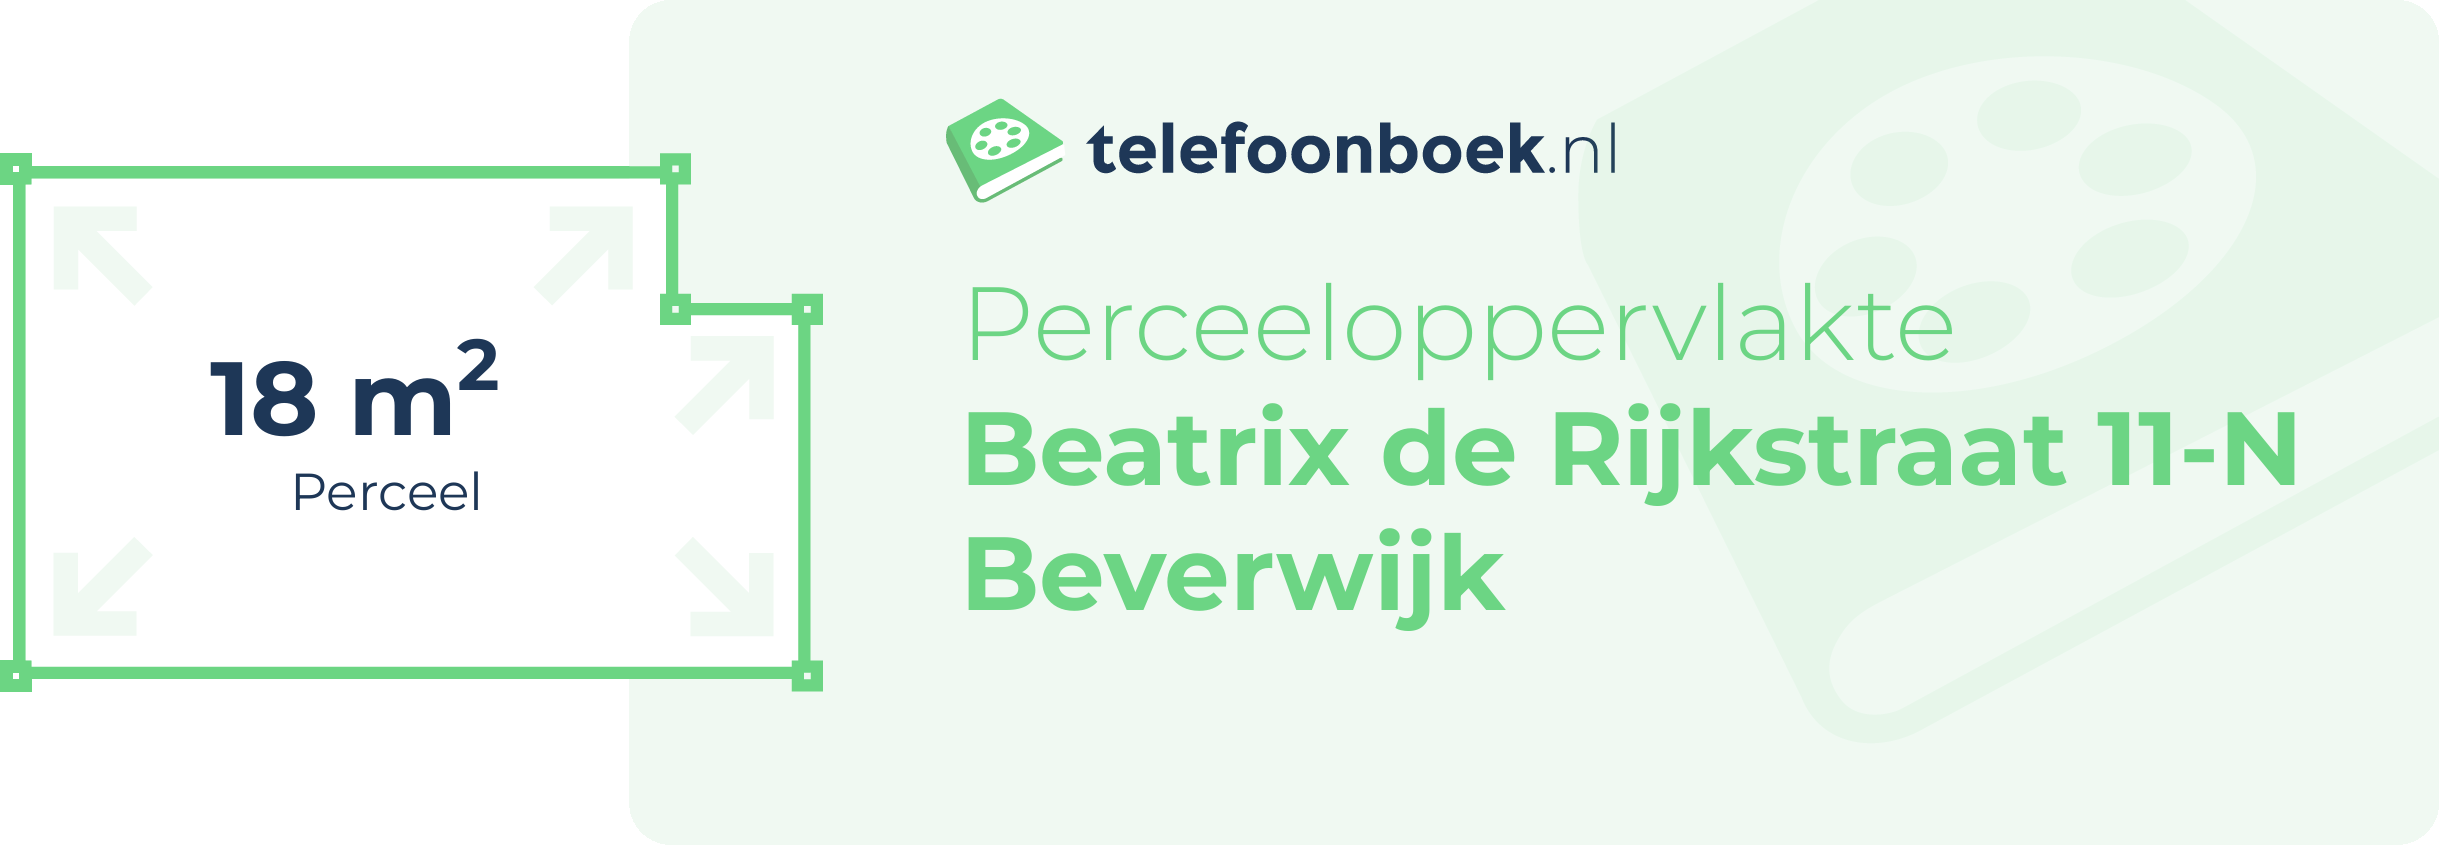 Perceeloppervlakte Beatrix De Rijkstraat 11-N Beverwijk